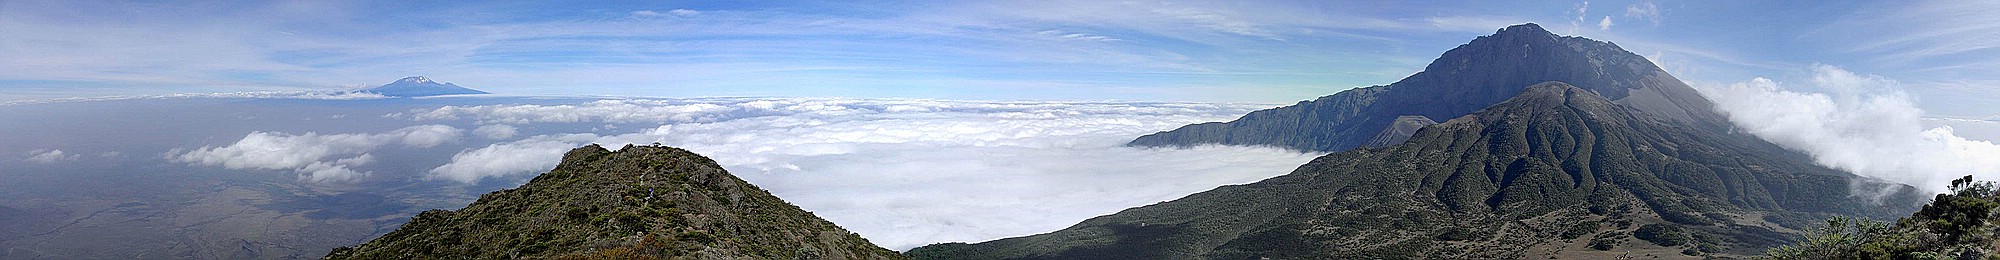 Mt. Meru und Mt. Kilimanjaro vom Little Meru aus